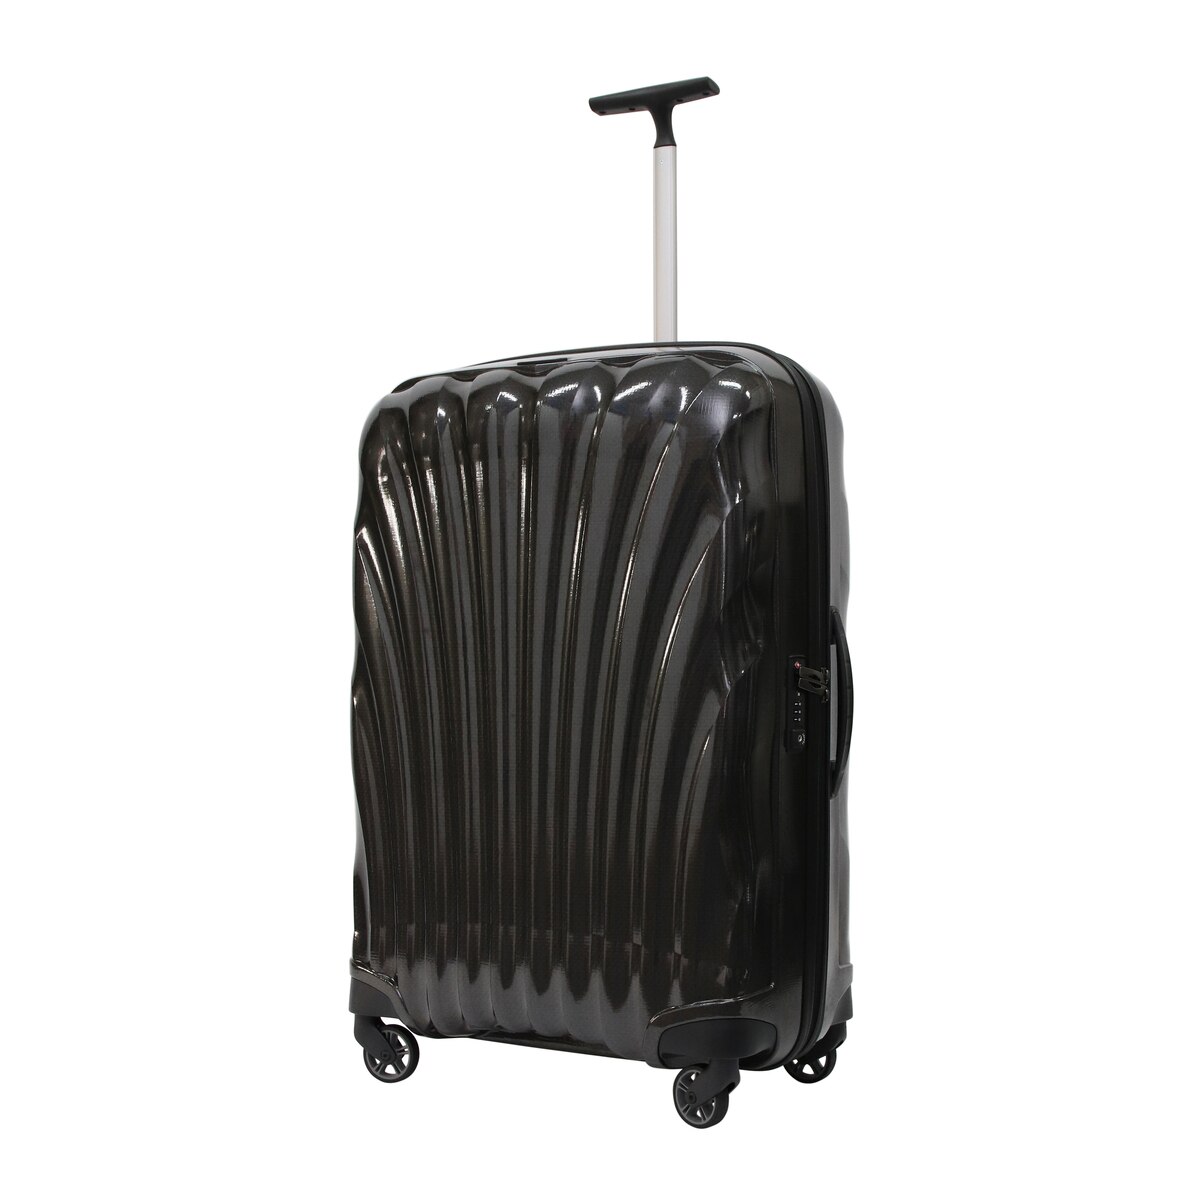 サムソナイト スーツケース コスモライト 3.0 75cm  73351 ブラック